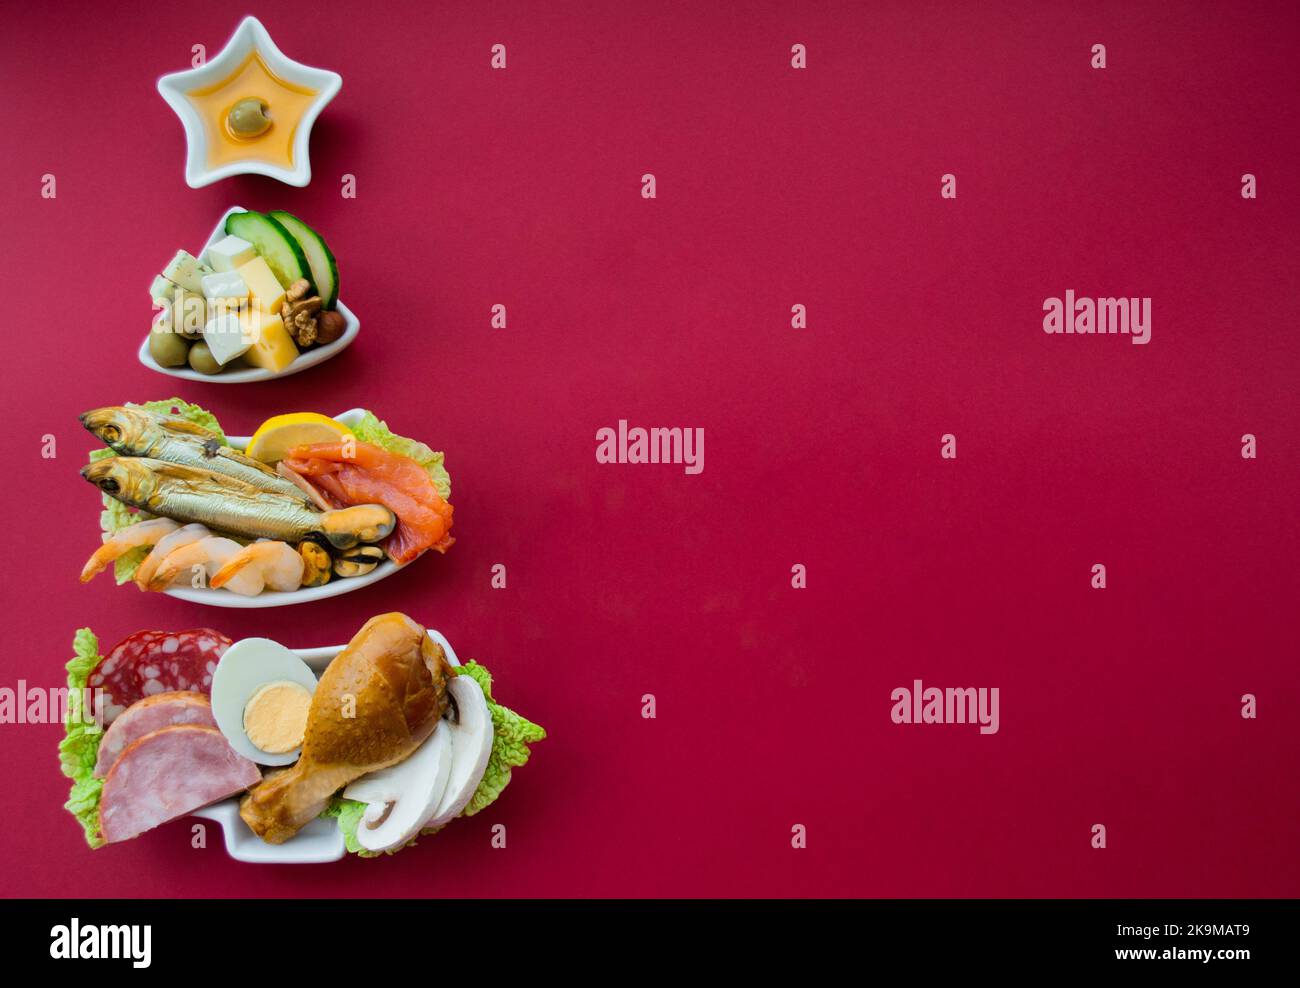 Teller in Form eines Weihnachtsbaums mit Eiweißfutter - Fleisch, Fisch, Käse, Nüsse, etc. Roter Hintergrund. Das Konzept der Keto-Diät behandelt für die holi Stockfoto